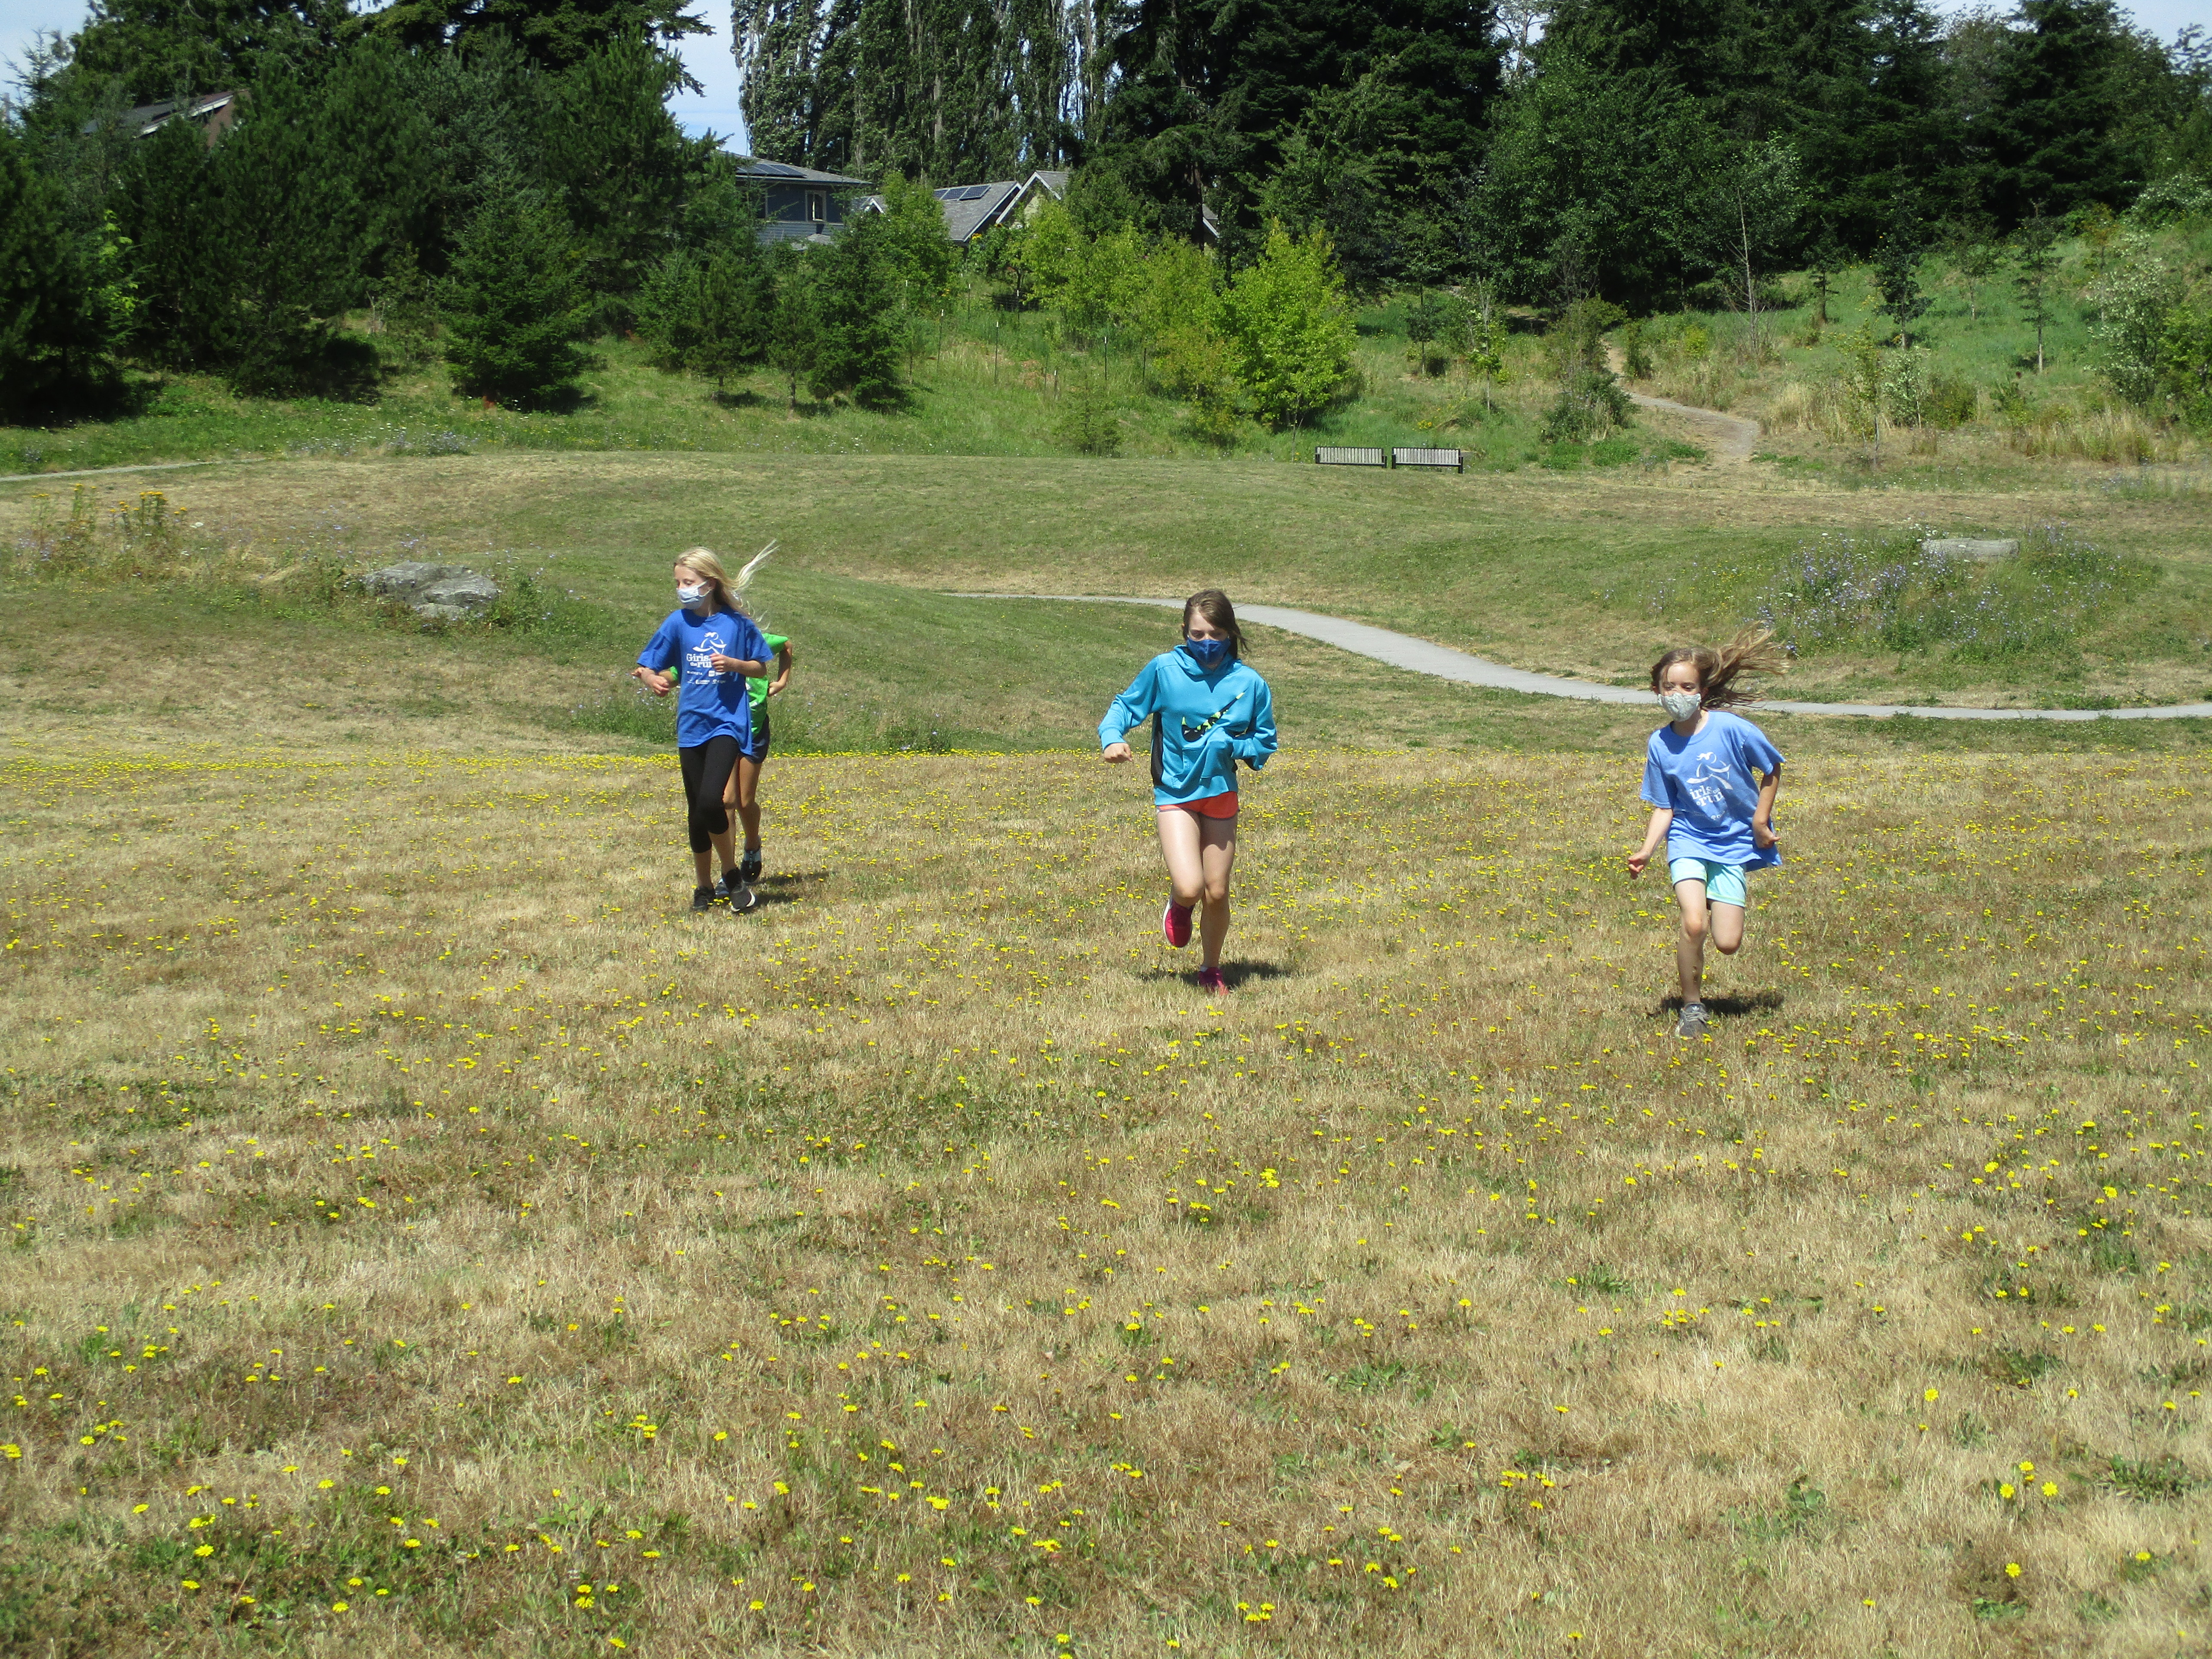 Girls running in field